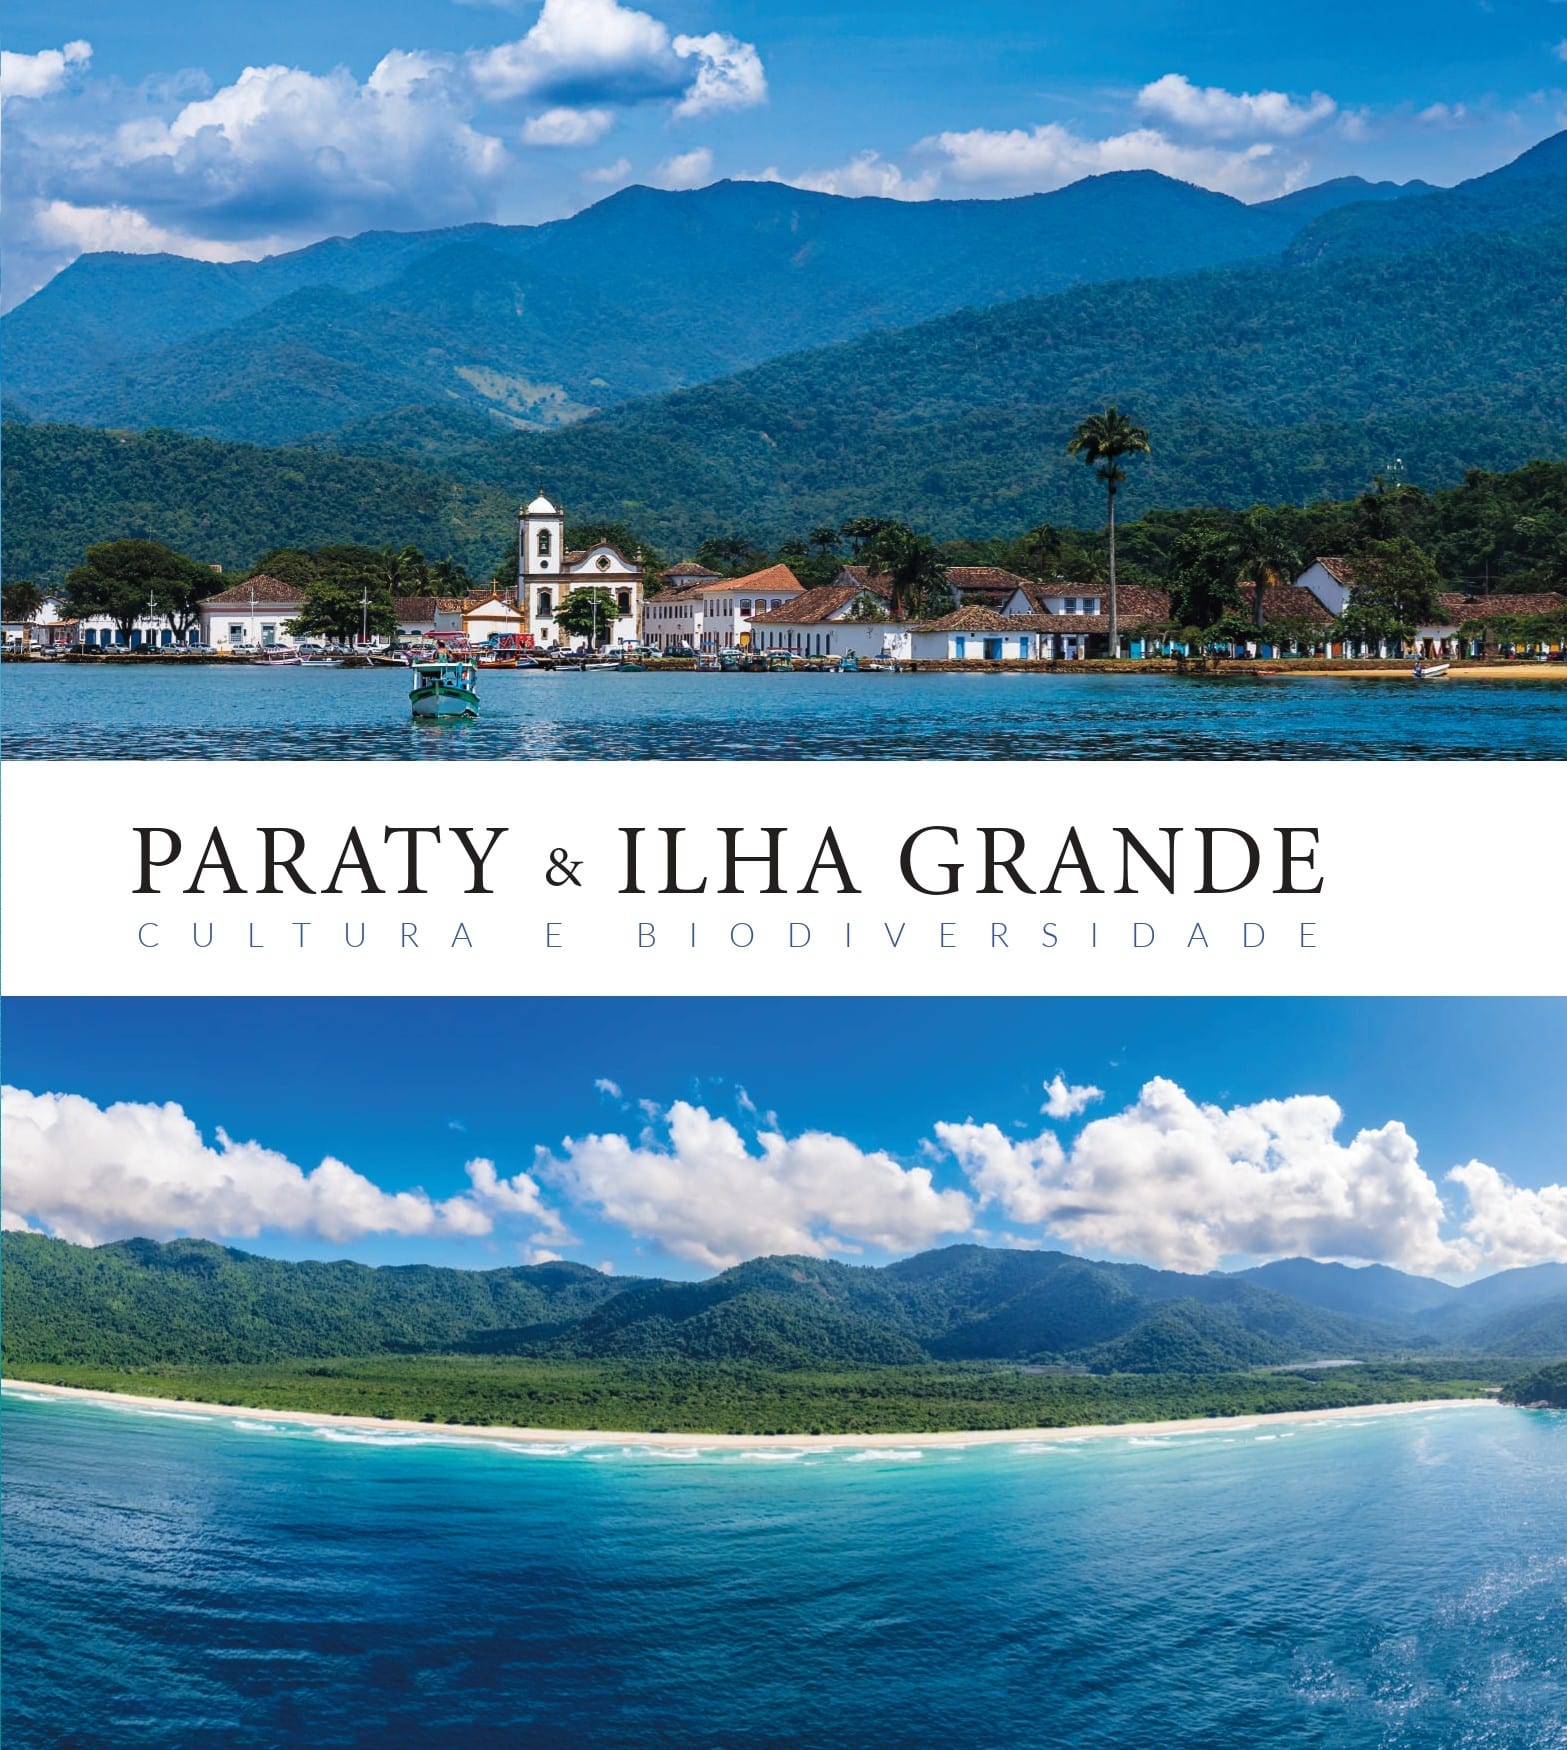 revistaprosaversoearte.com - Livro “Paraty & Ilha Grande – cultura e biodiversidade” é lançado pela Quereres Edições